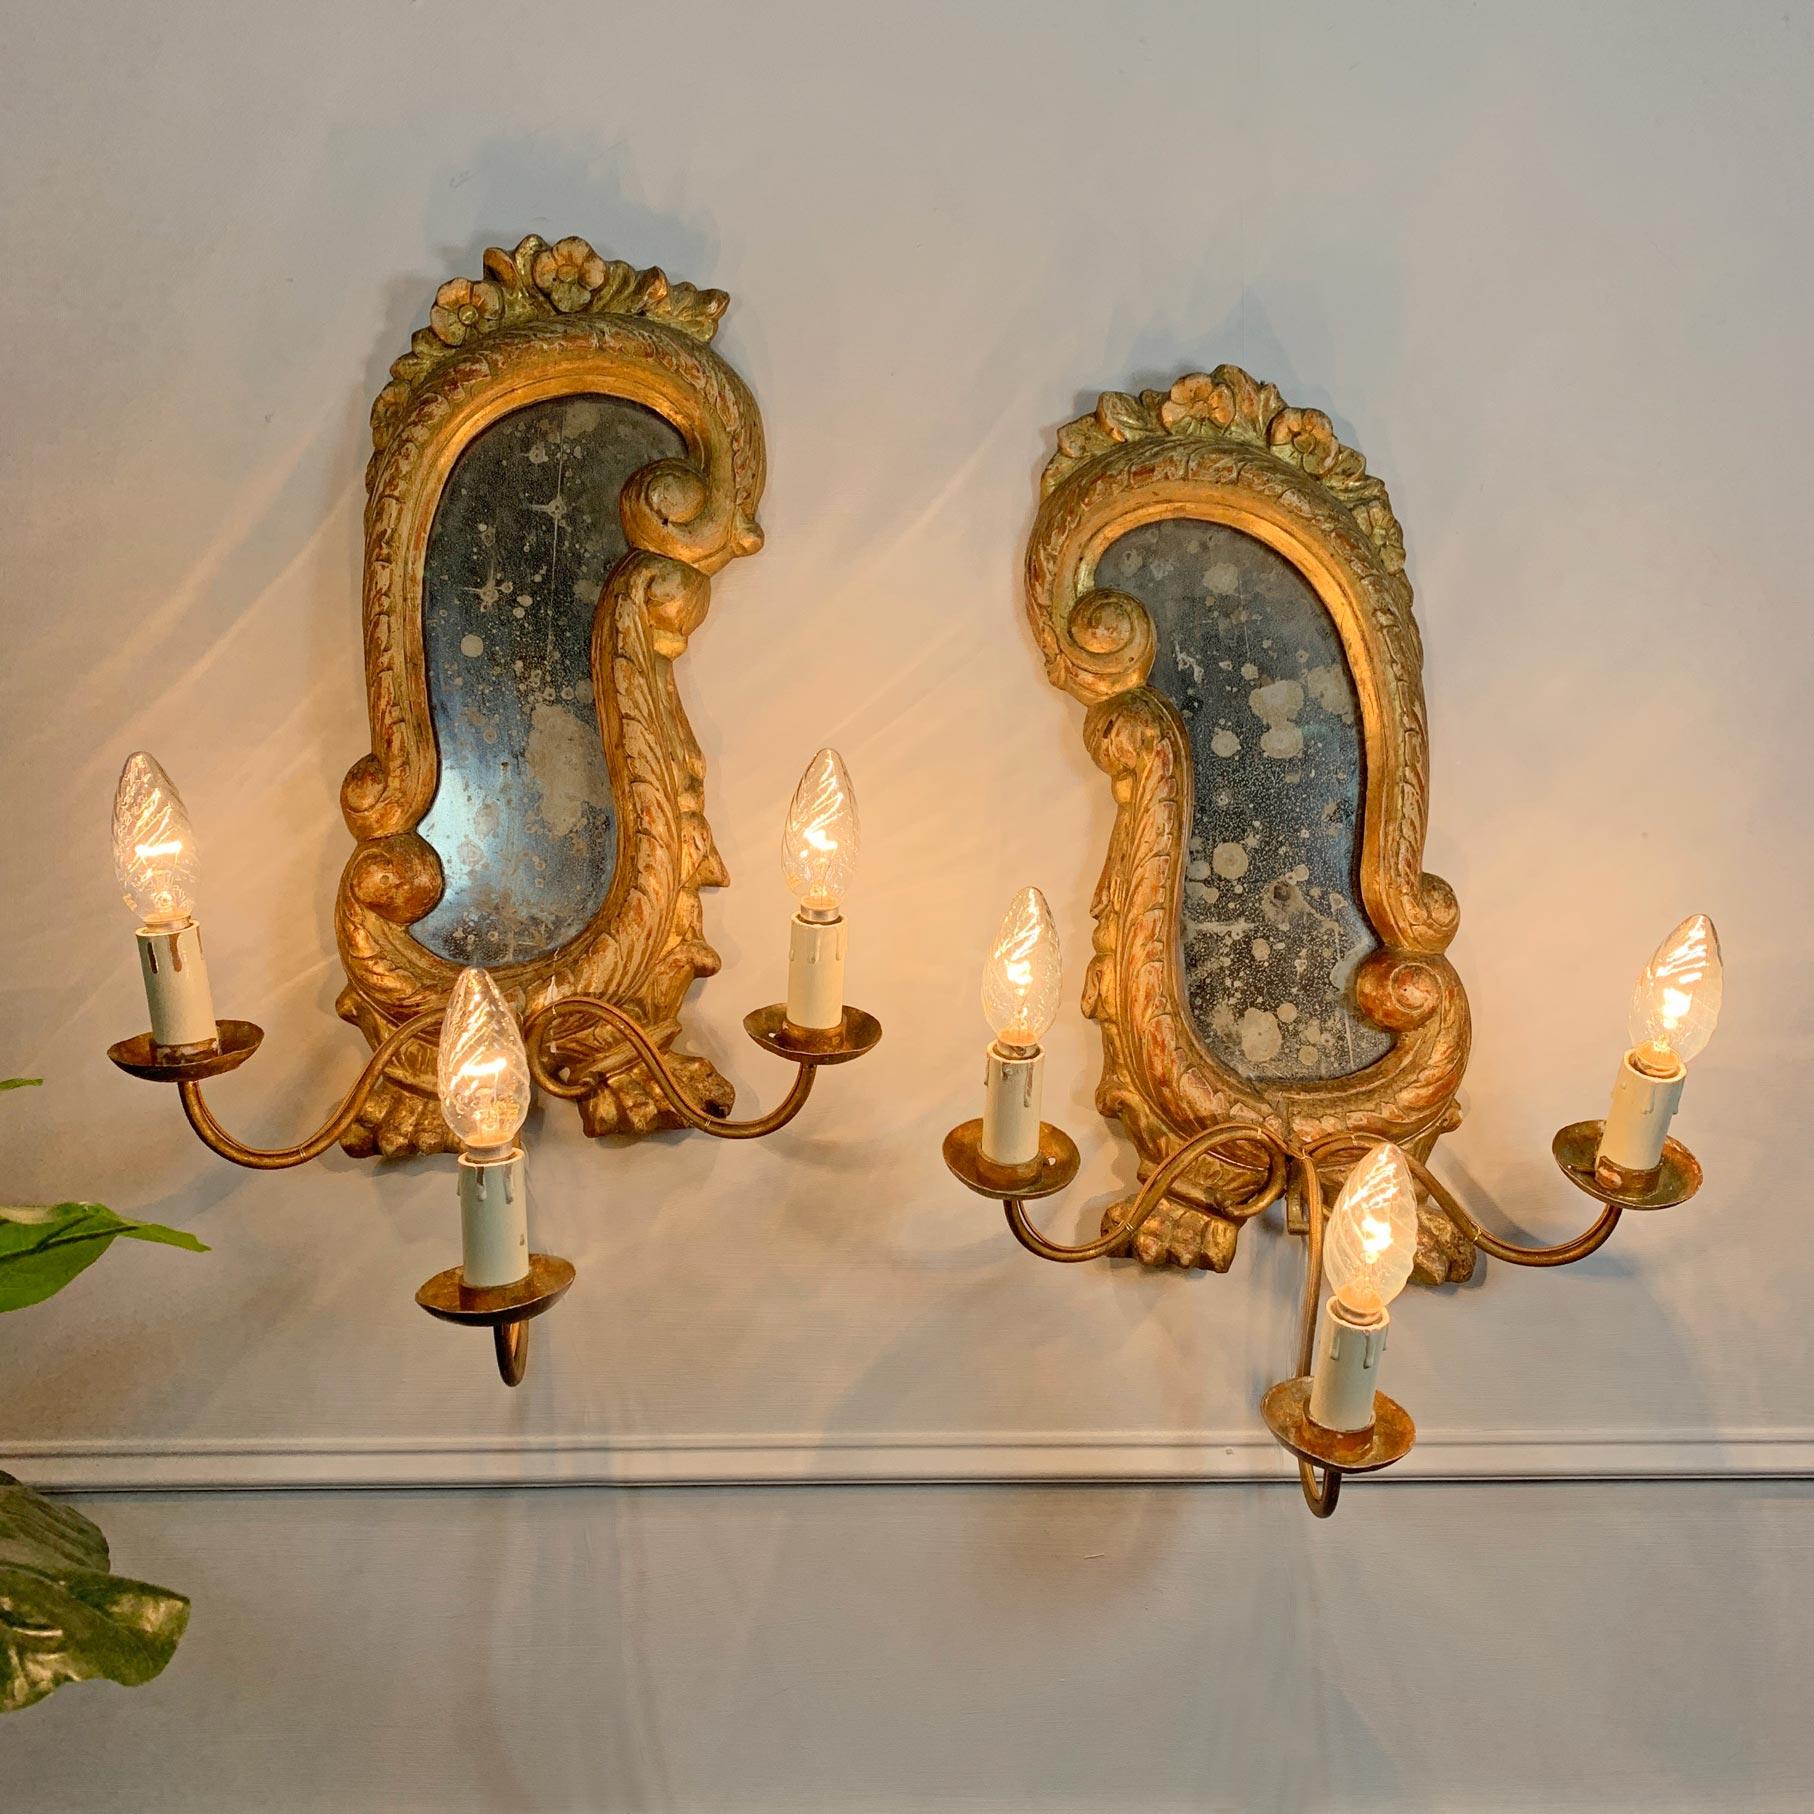 Girandoles italiennes en bois sculpté et doré avec patte de lion, cadres miroirs du XVIIIe siècle avec luminaires postérieurs, chacun avec un porte-lampe triple. Petites pertes au gesso et à la dorure, une petite boucle d'accrochage à l'arrière de